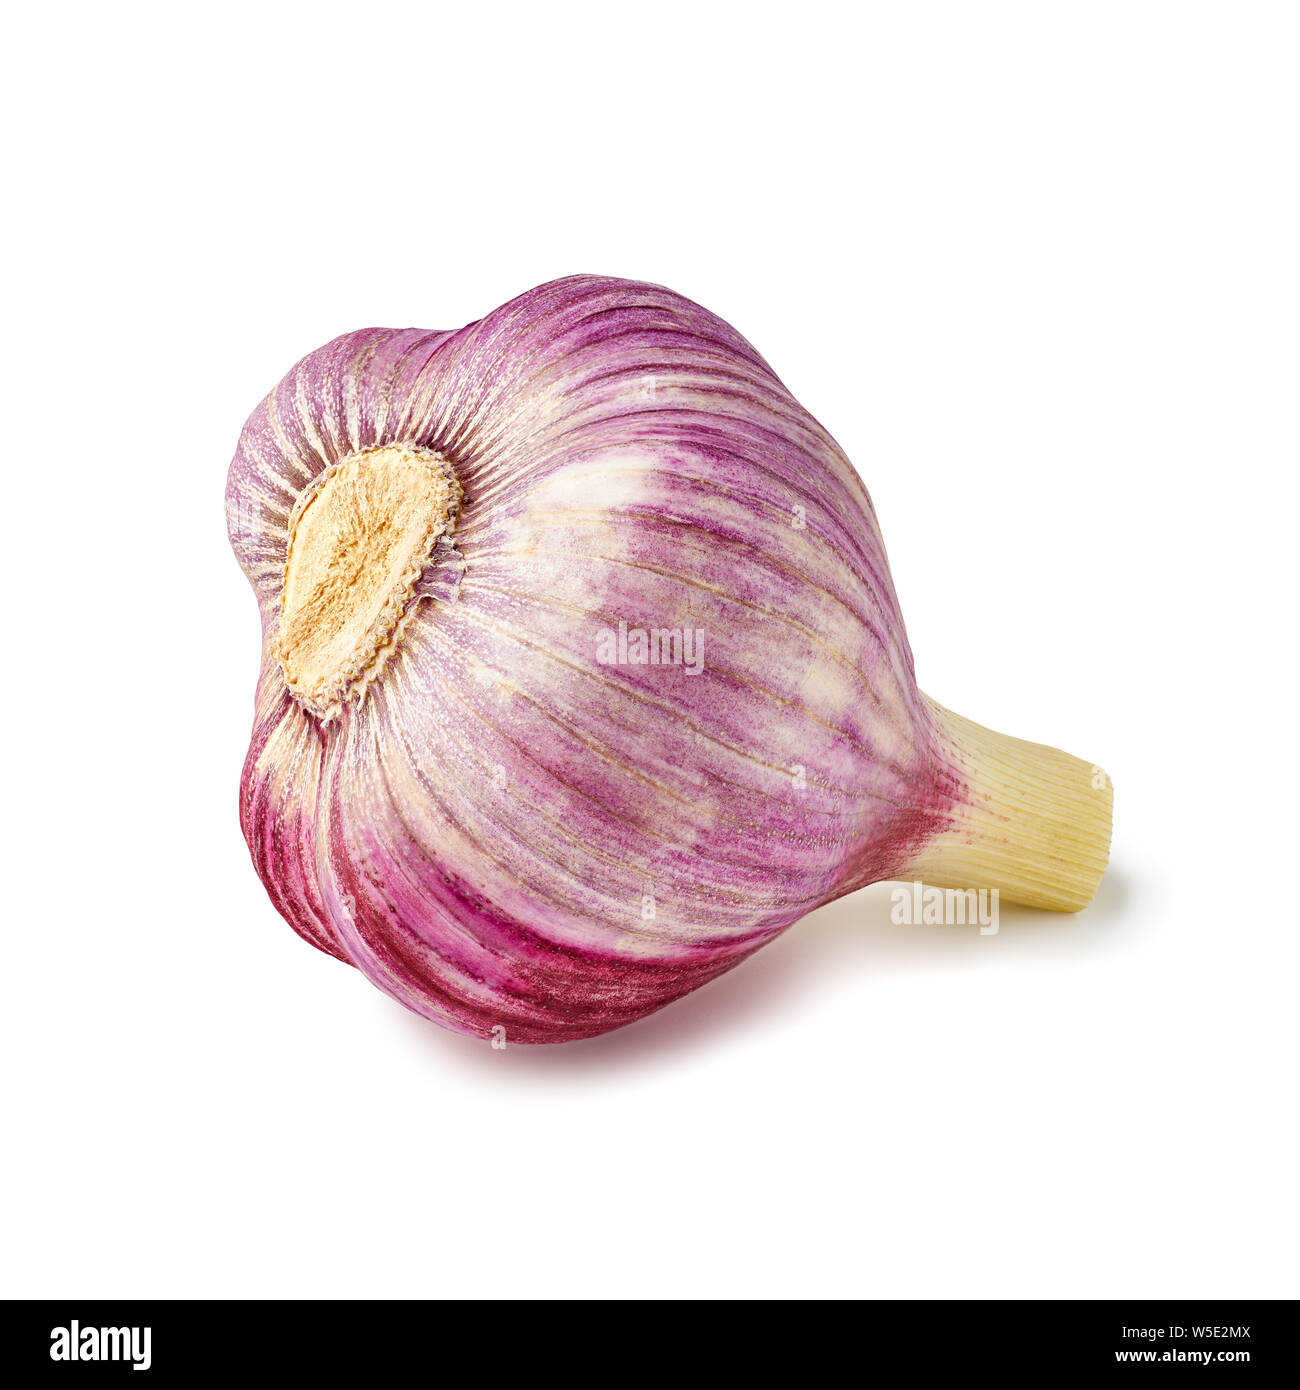 Violet bulb of fresh garlic on white Stock Photo